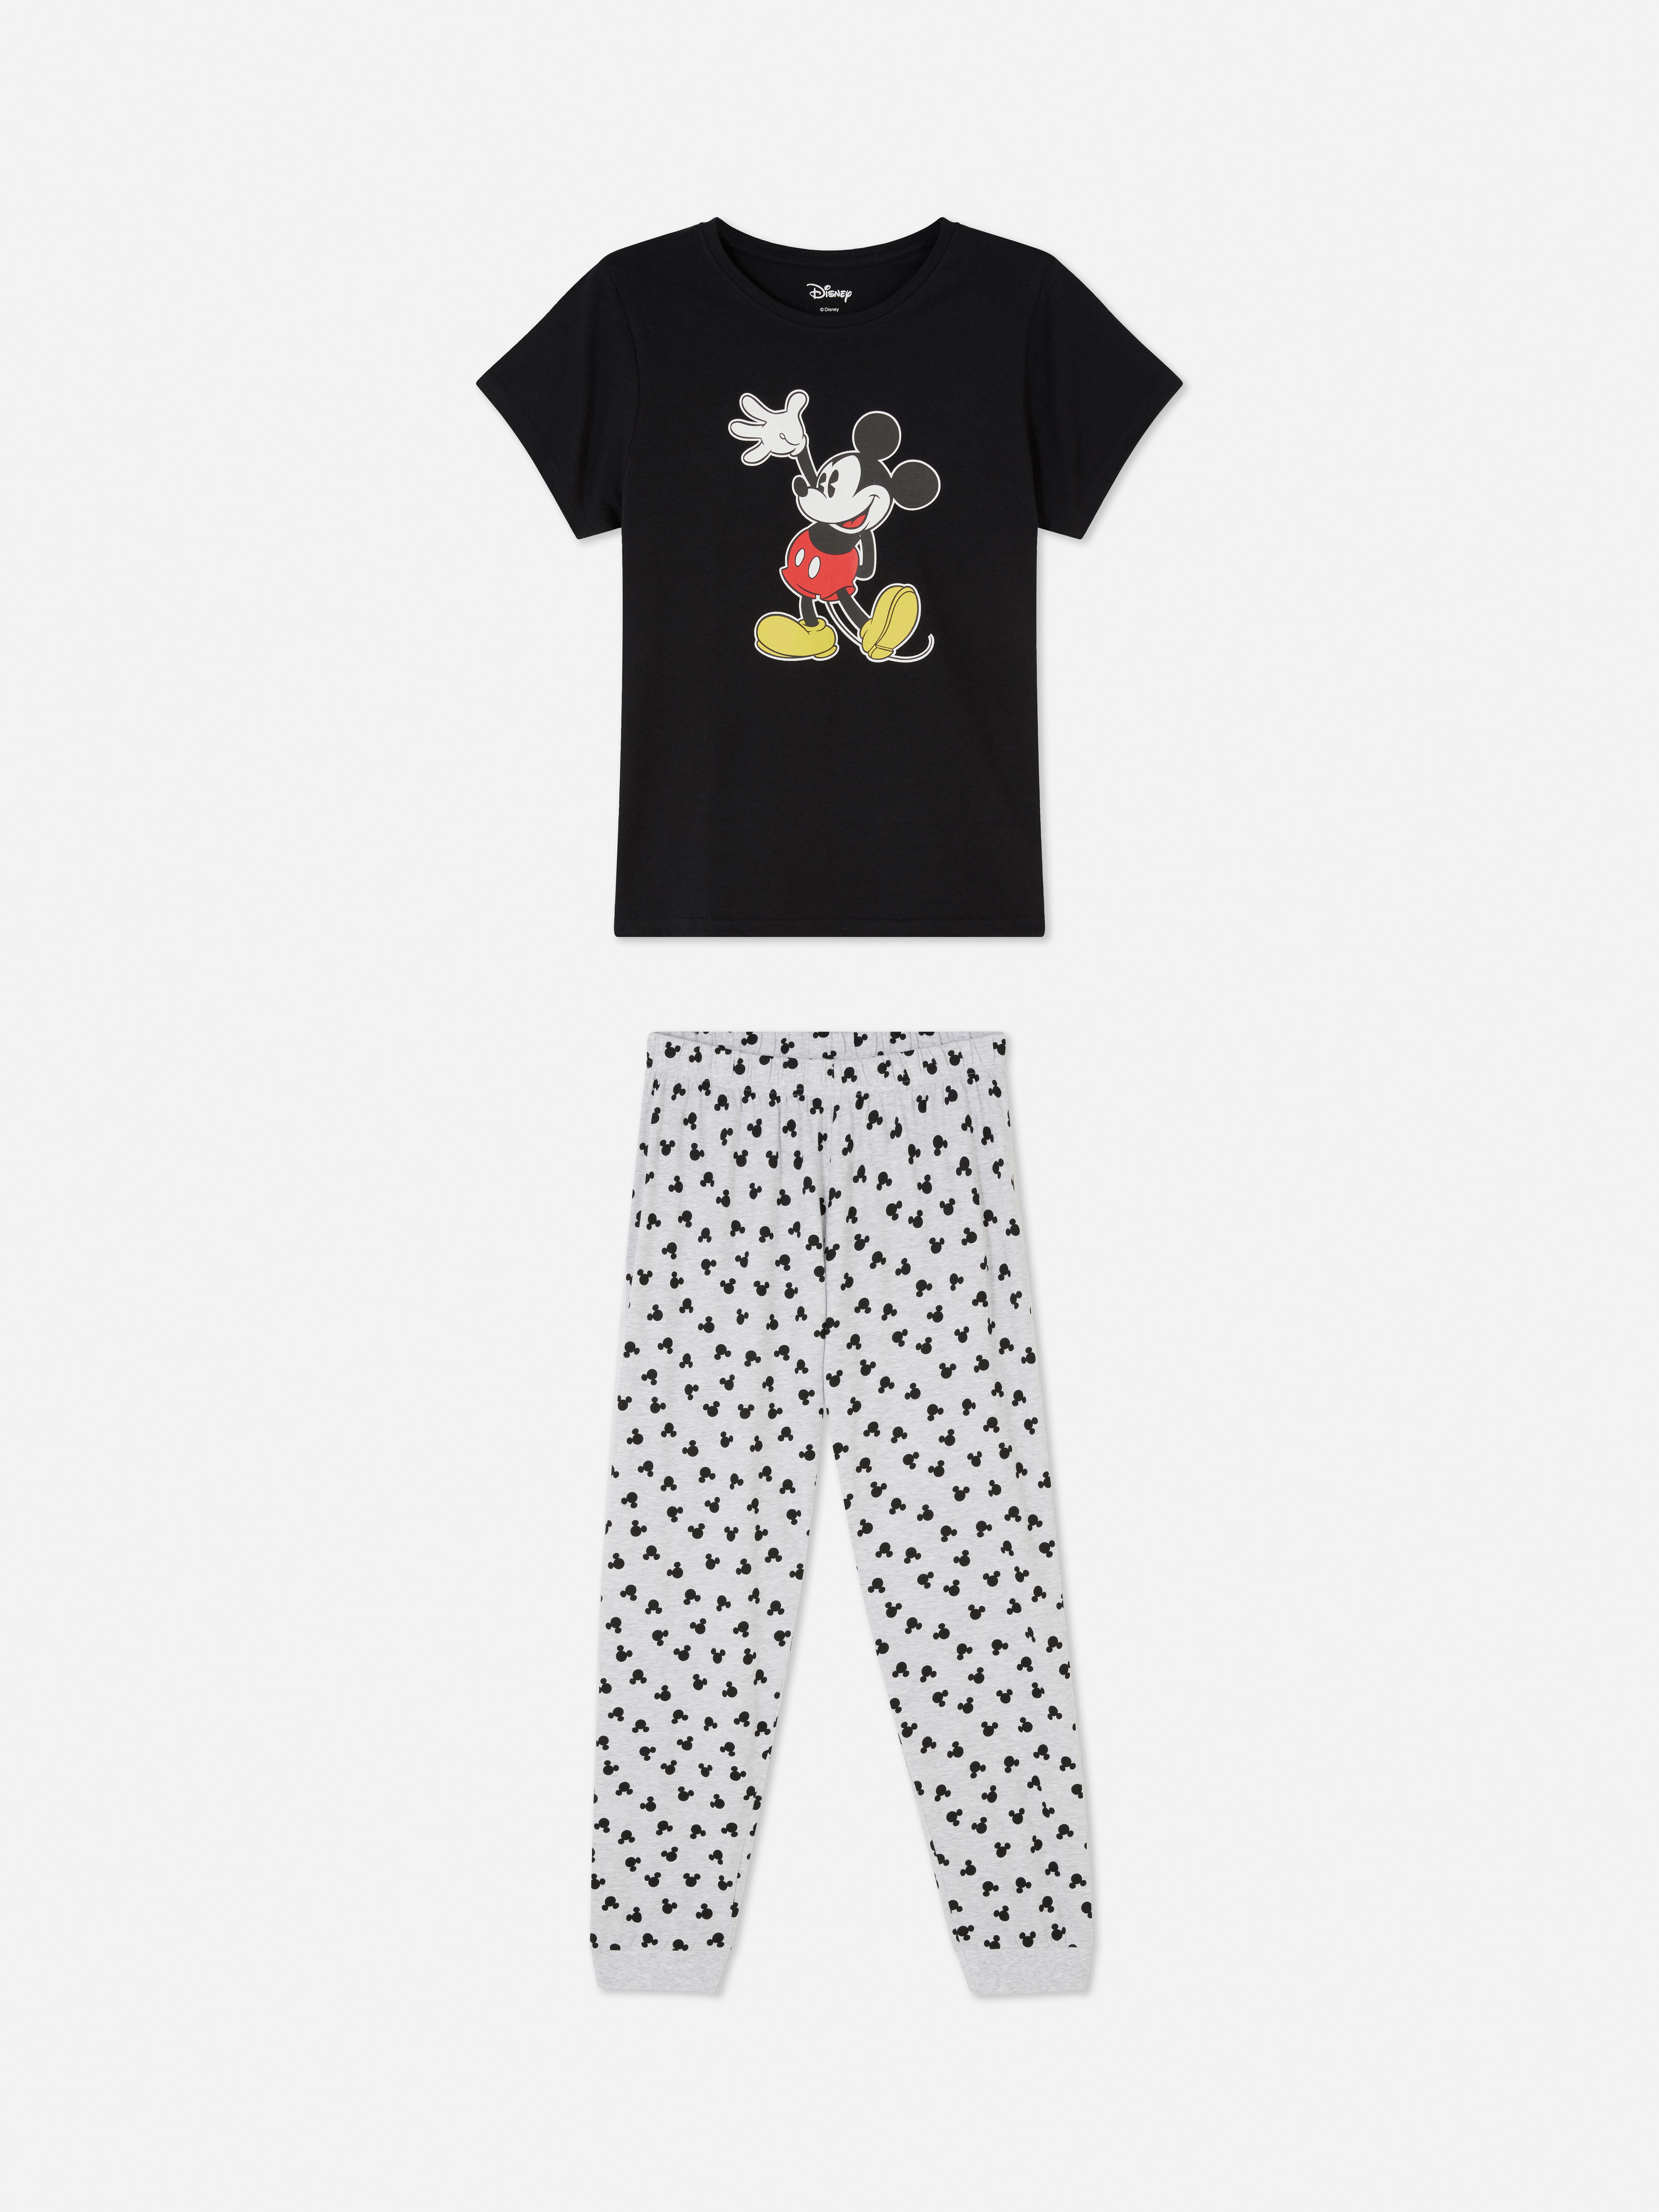 Pijama de Mickey Mouse de Disney | Pijama para mujer Pijamas para mujer | Ropa para mujer | Nuestra línea de moda femenina | Todos los productos Primark | Primark España